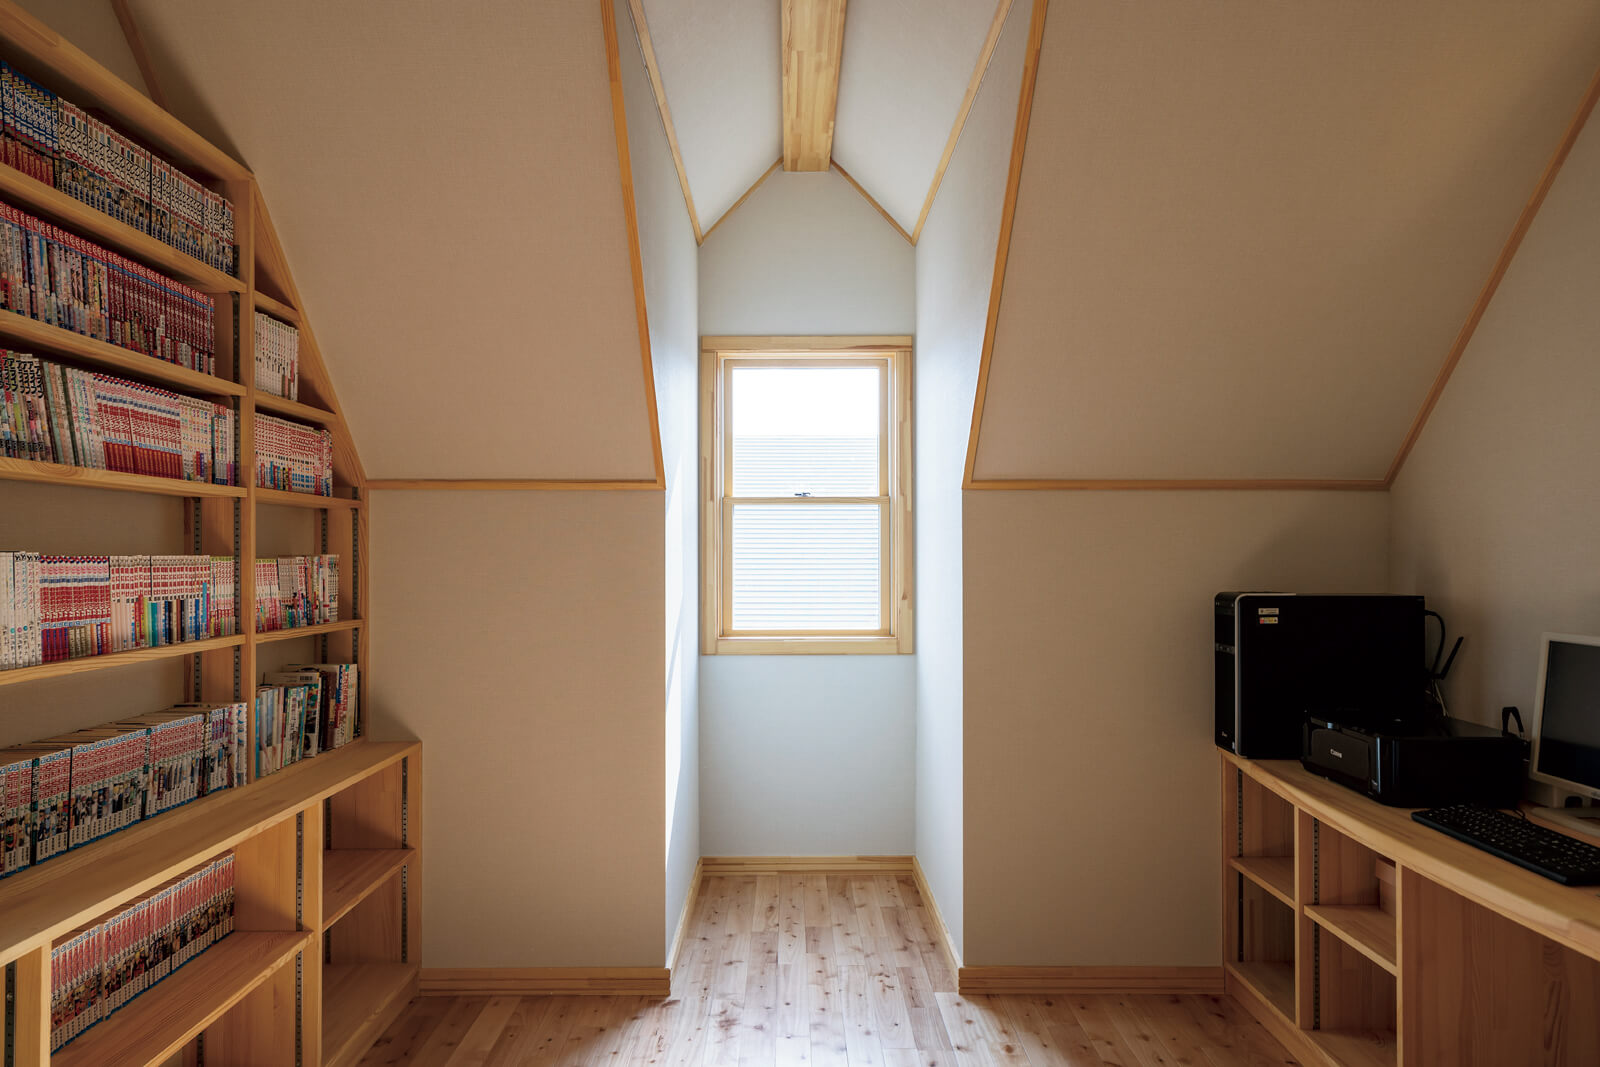 壁一面に本棚を造作した2階のファミリースペースには、三角屋根の傾斜を生かした個性的な出窓